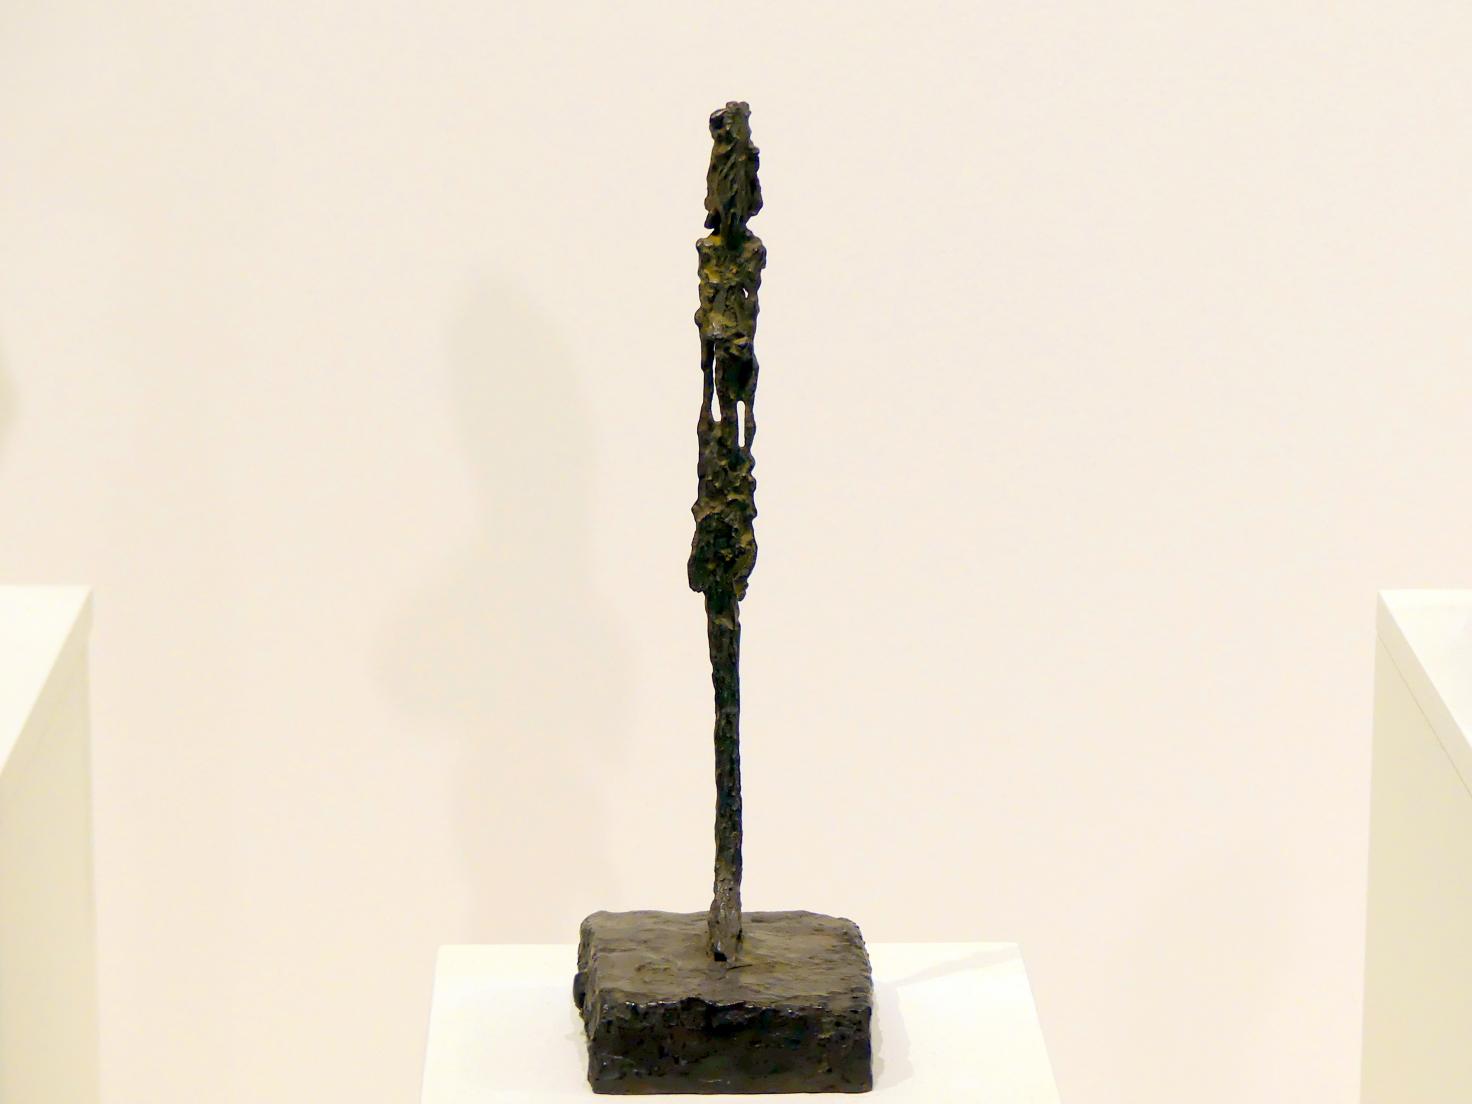 Alberto Giacometti (1914–1965), Statuette, Prag, Nationalgalerie im Messepalast, Ausstellung "Alberto Giacometti" vom 18.07.-01.12.2019, Stehende Figuren, um 1947, Bild 1/5